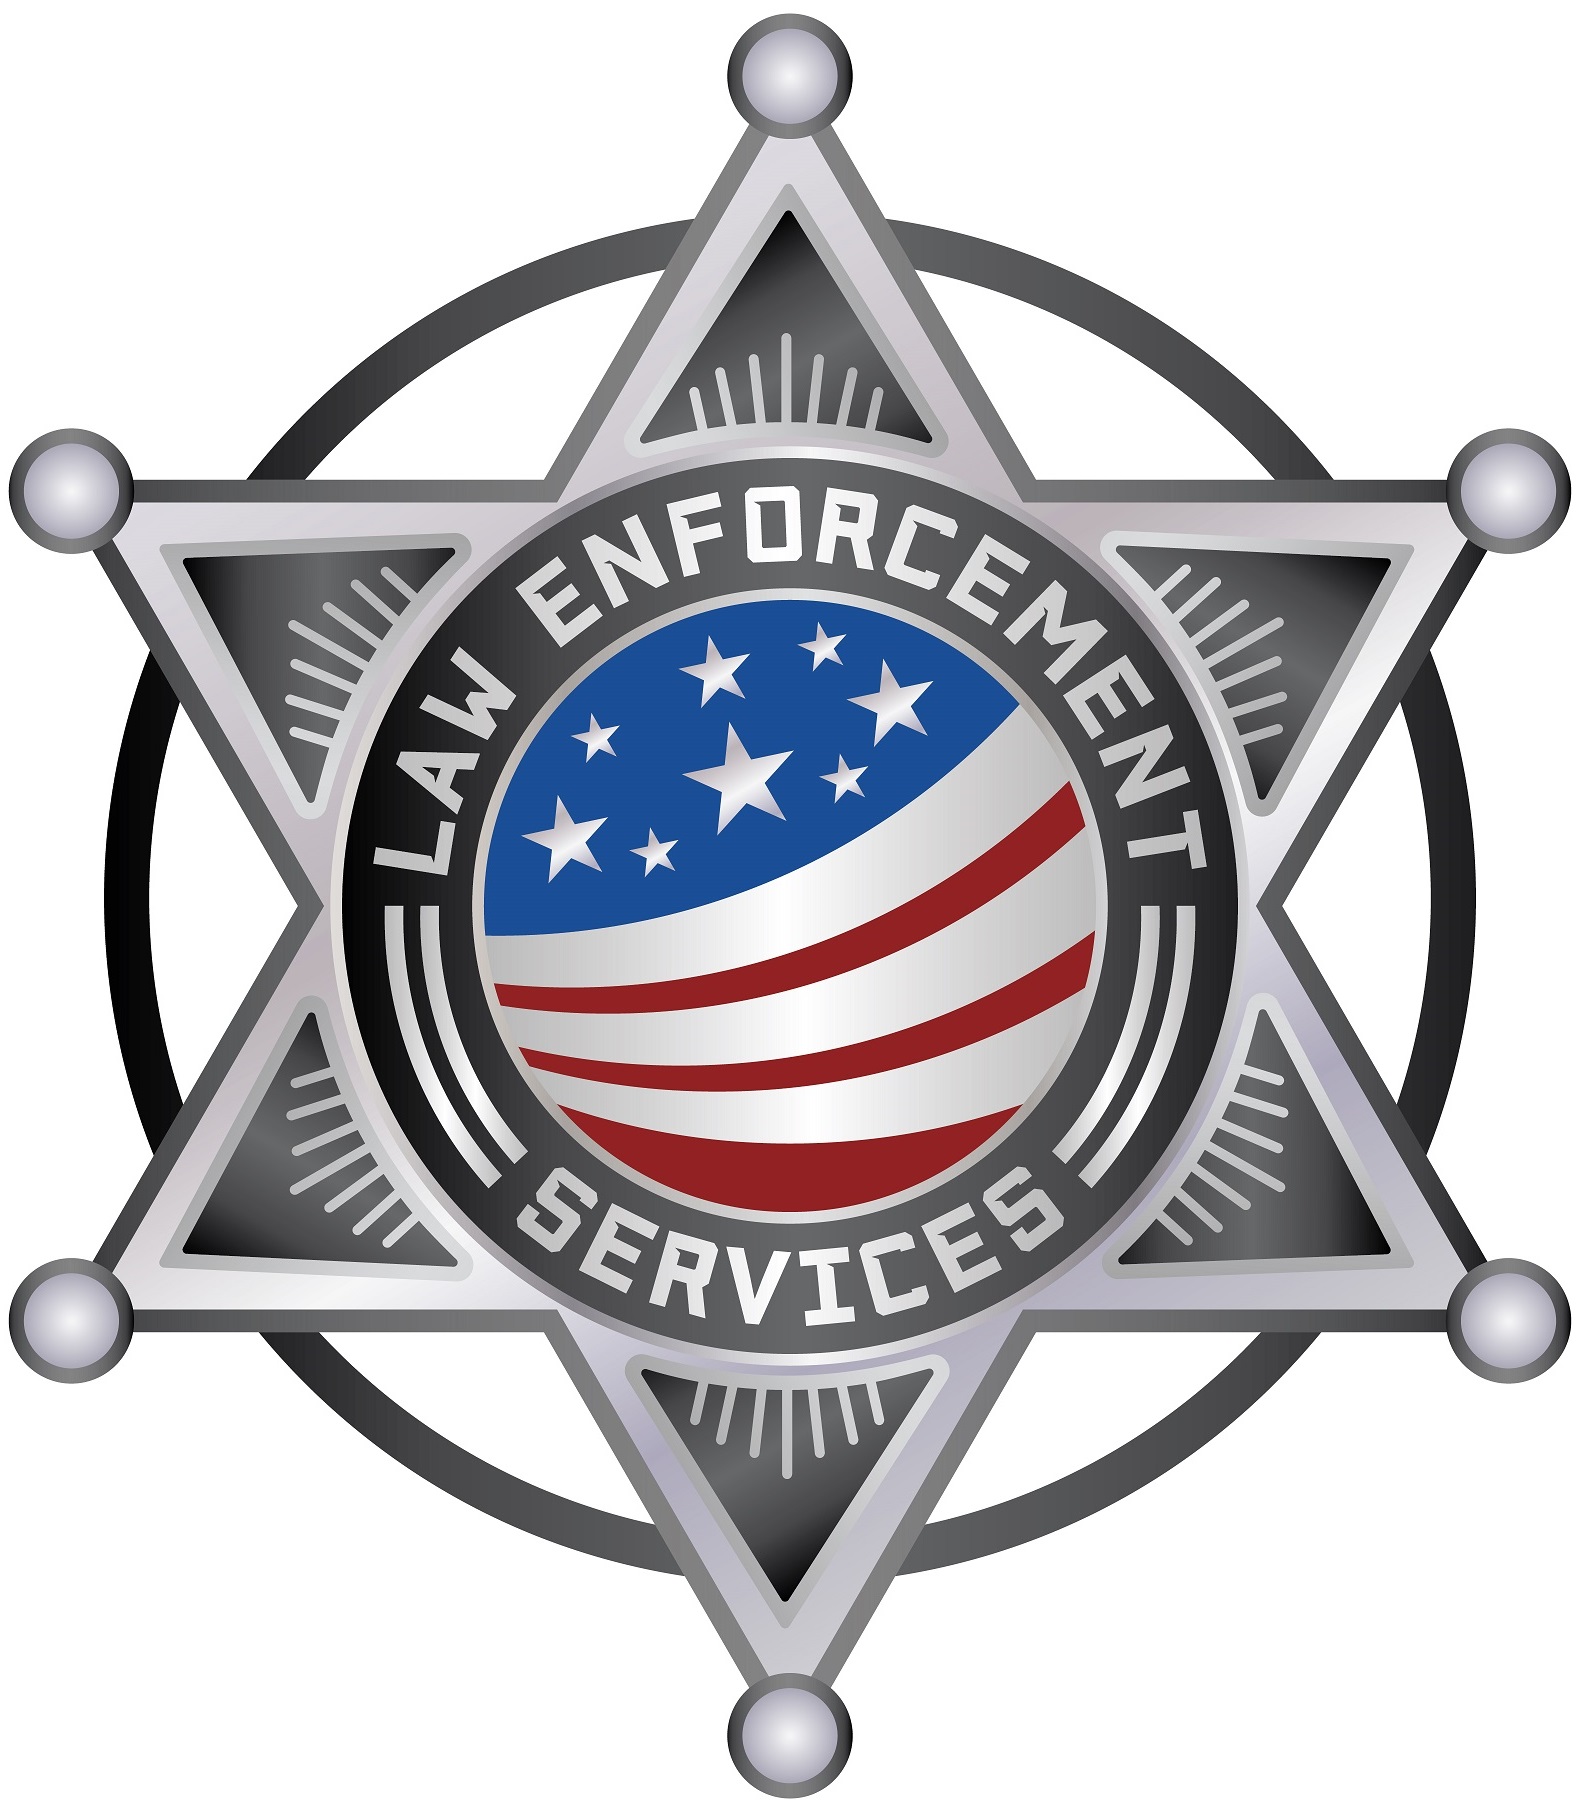 Law Enforcement Services